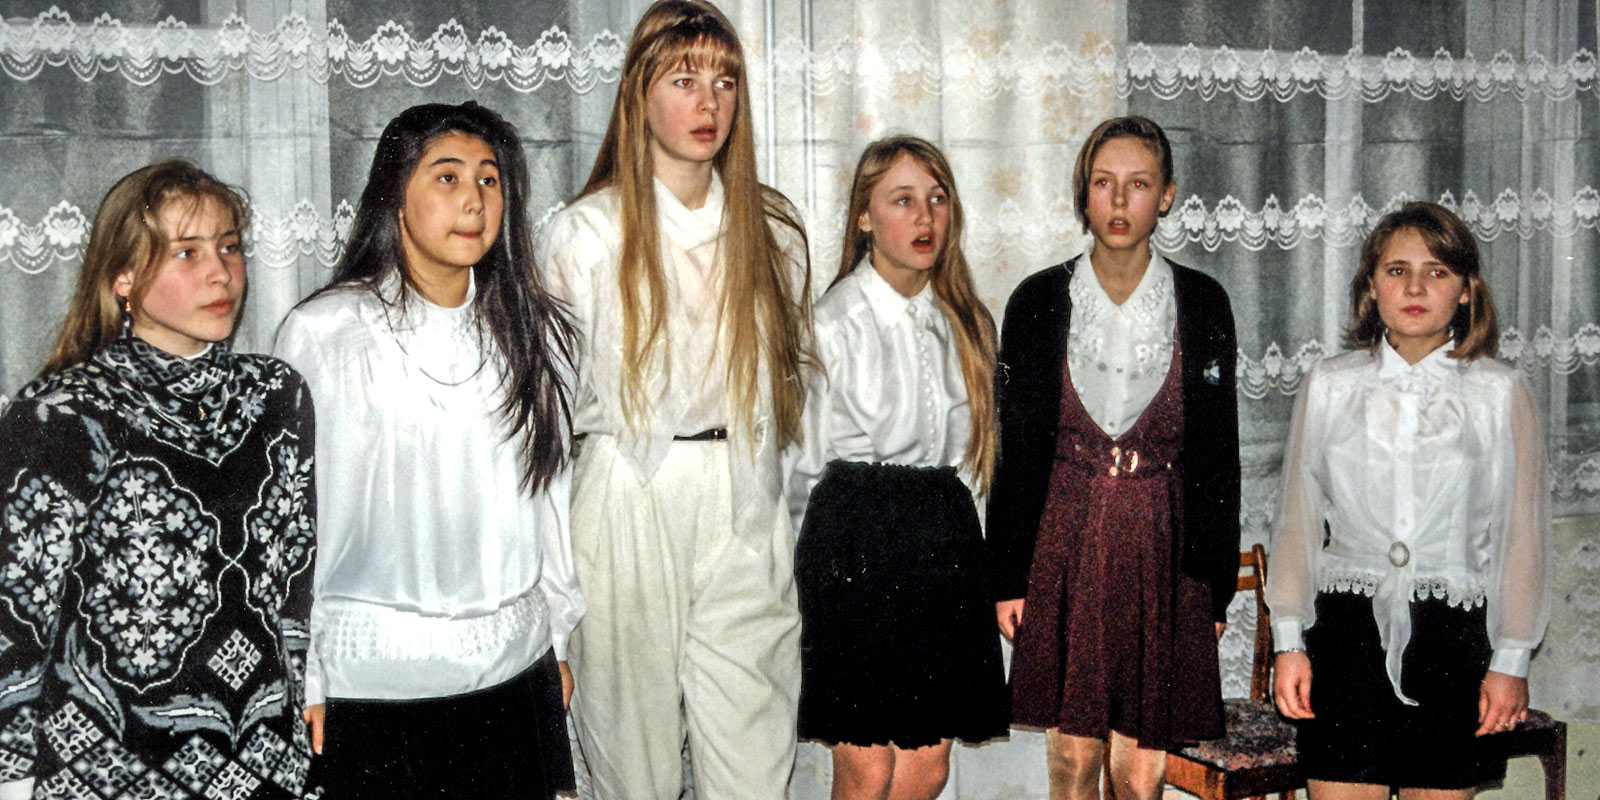 В настоящее время ансамбль девочек с. Цветнополье состоит из представителей различных национальностей и исполняет в основном русские песни. Фото: А. Корб 1997 г.